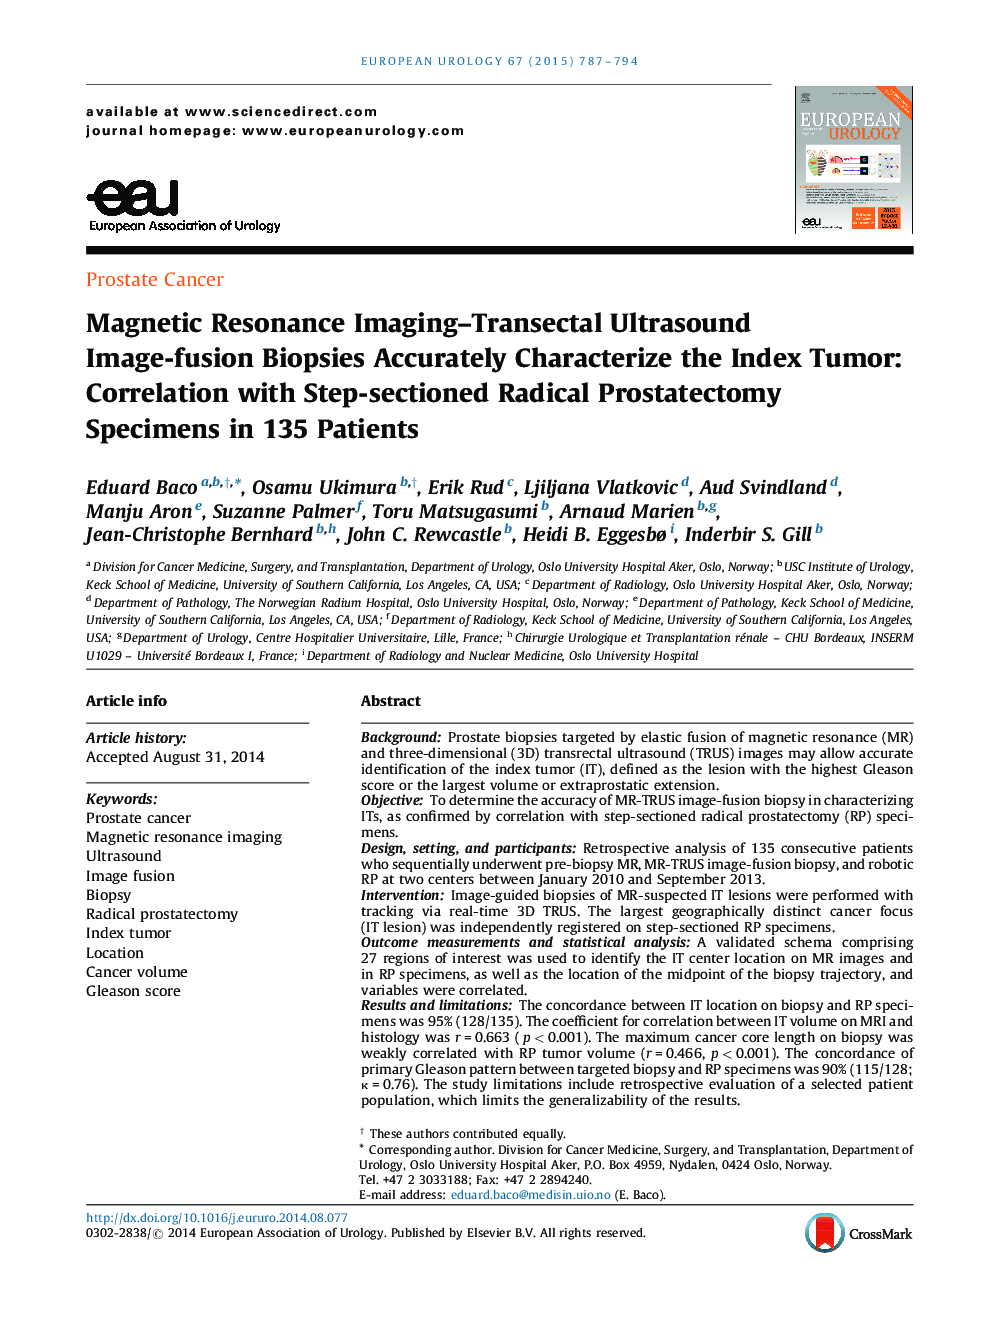 تصویربرداری رزونانس مغناطیسی-ترانسکتال بیوپسی تصویربرداری تصویر اولتراسوند دقیقا مشخصی از تومور شاخص: همبستگی با نمونه های پروستاتکتومی رادیکال مرحله ای در 135 بیمار 